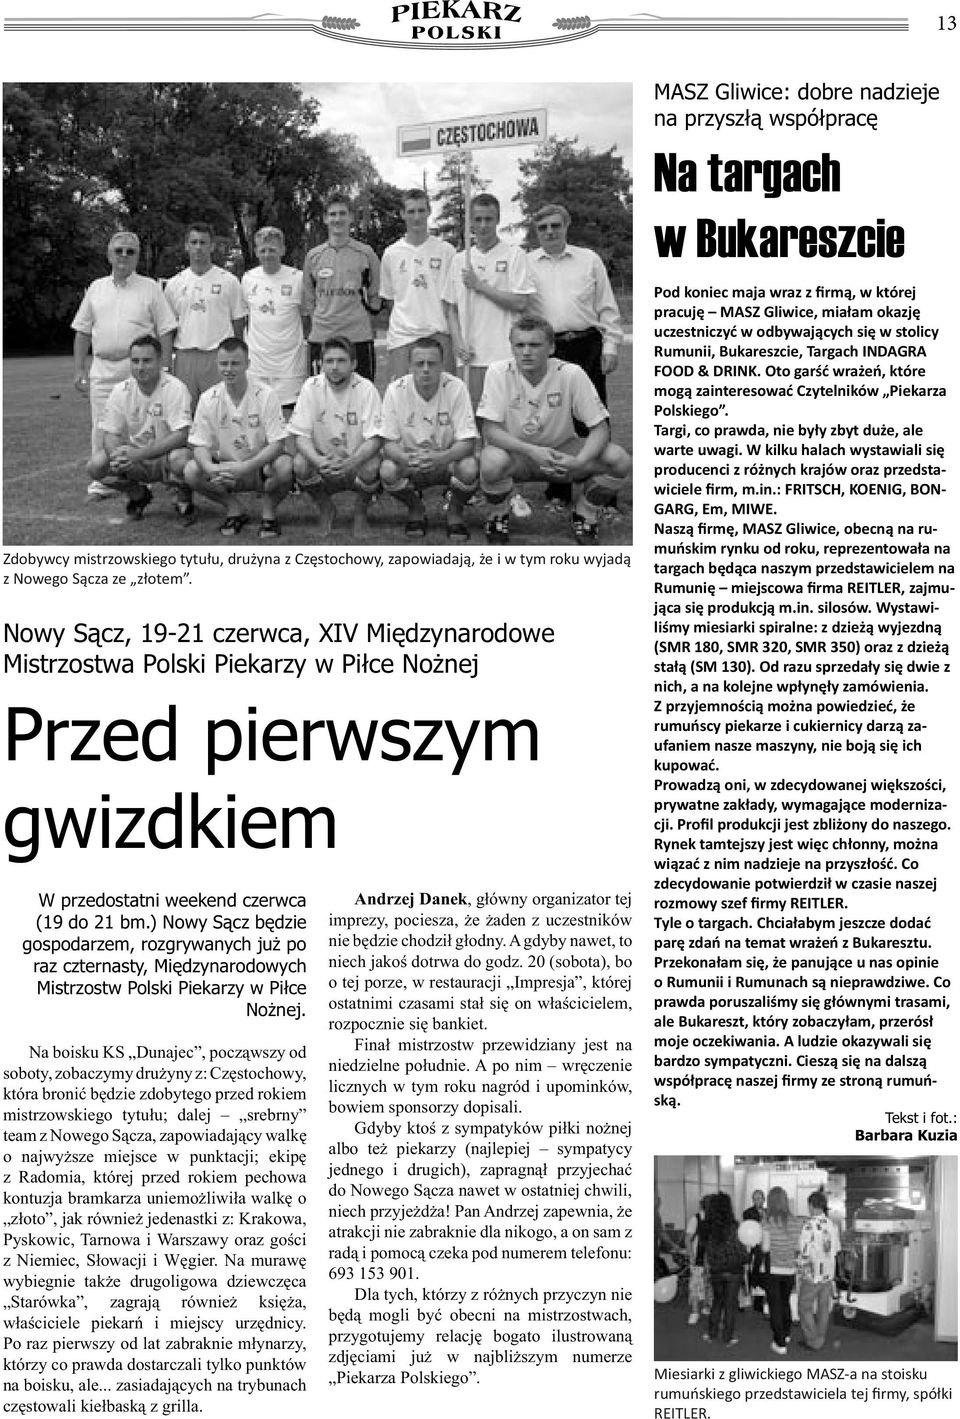 ) Nowy Sącz będzie gospodarzem, rozgrywanych już po raz czternasty, Międzynarodowych Mistrzostw Polski Piekarzy w Piłce Nożnej.